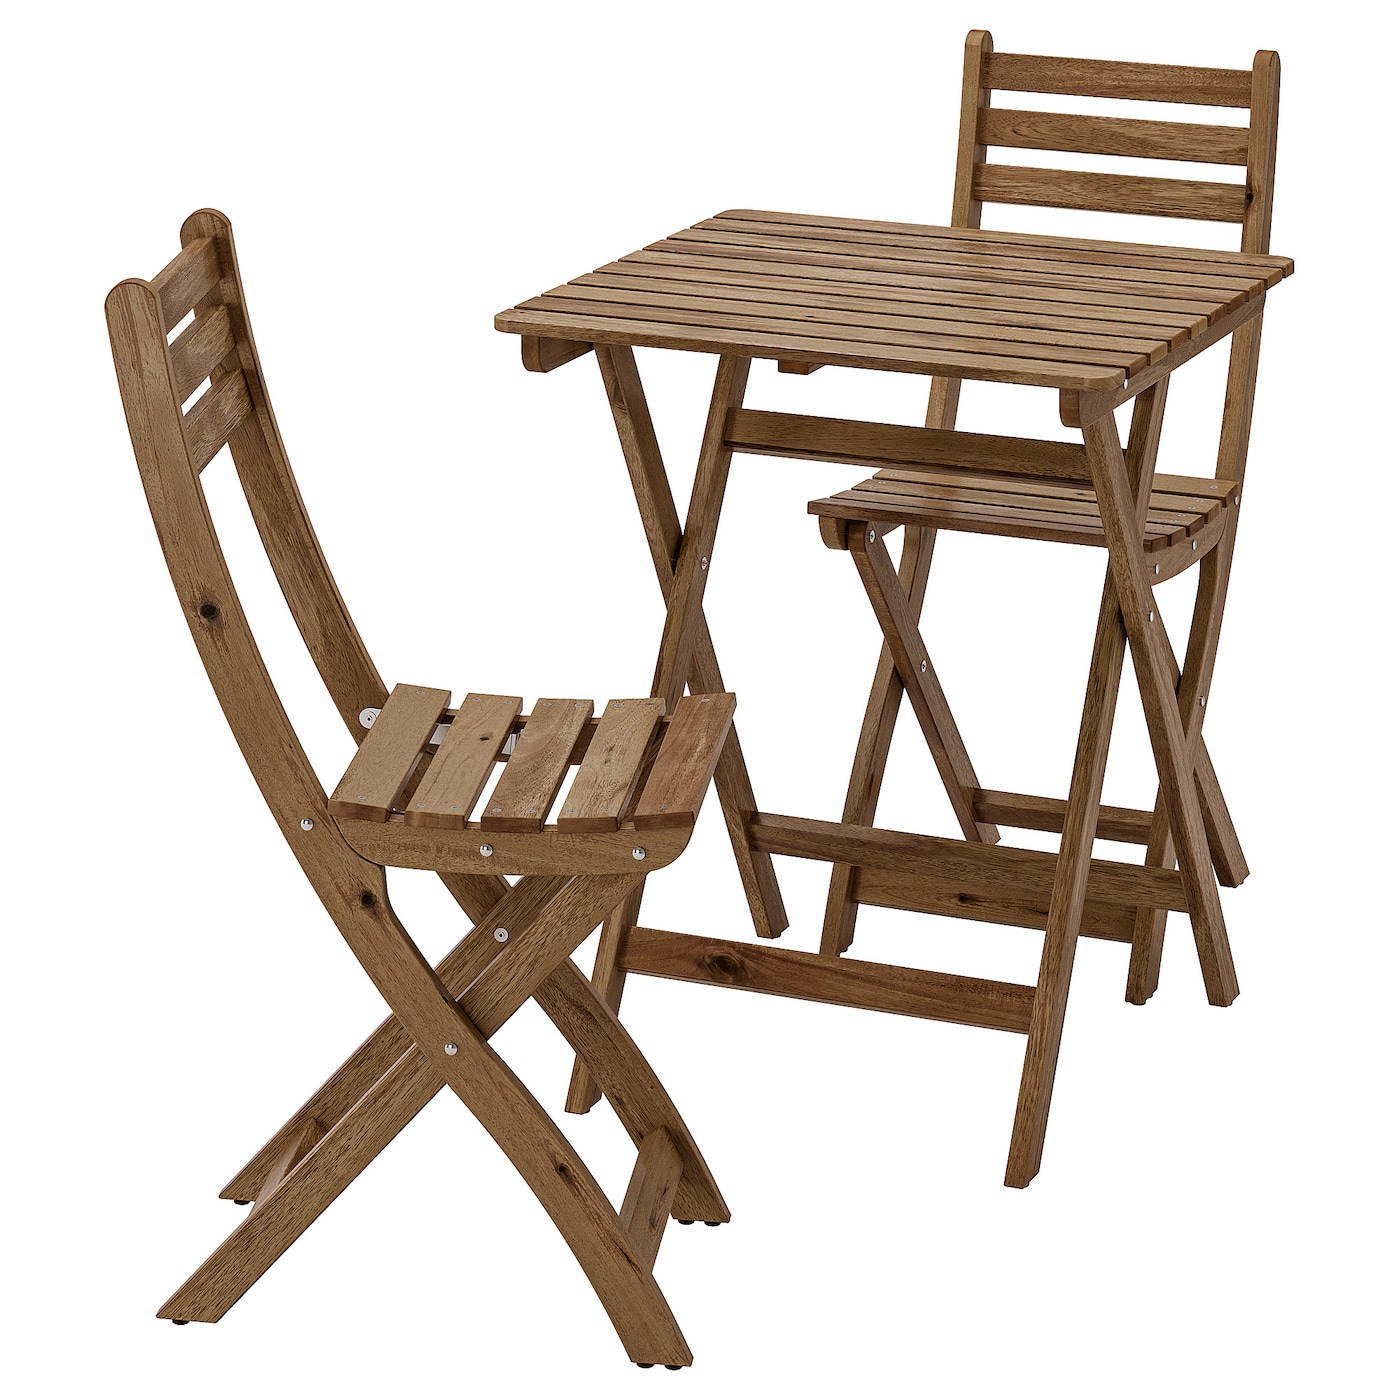 ASKHOLMEN Tisch+2 Stühle/außen  - Gartenstühle & Gartentische - Outdoor Möbel & Balkonzubehör Ideen für dein Zuhause von Home Trends. Outdoor Möbel & Balkonzubehör Trends von Social Media Influencer für dein Skandi Zuhause.